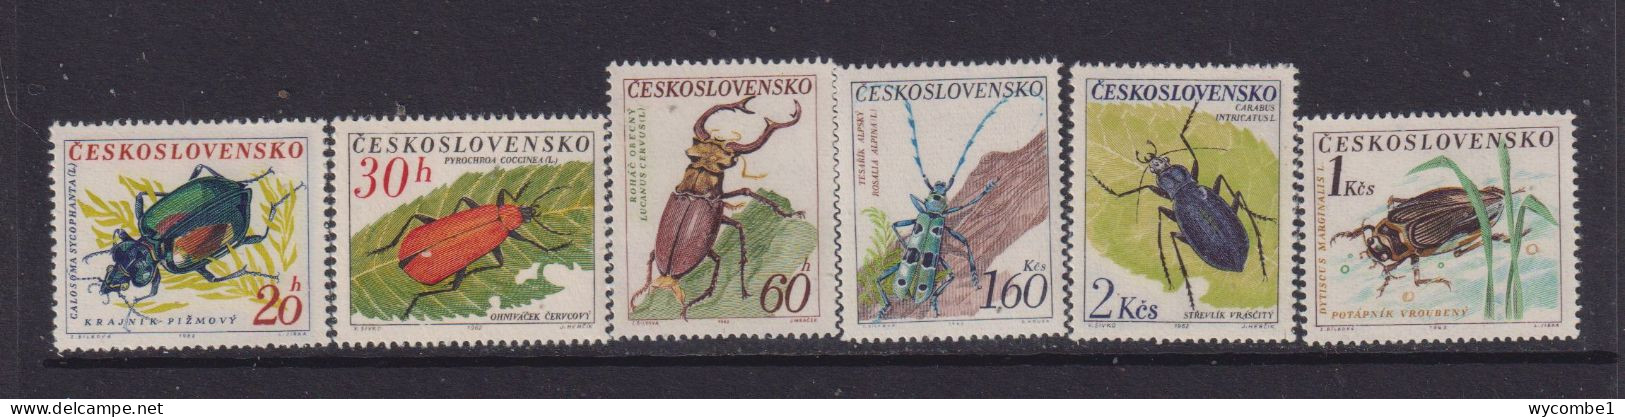 CZECHOSLOVAKIA  - 1962 Beetles Set Never Hinged Mint - Unused Stamps